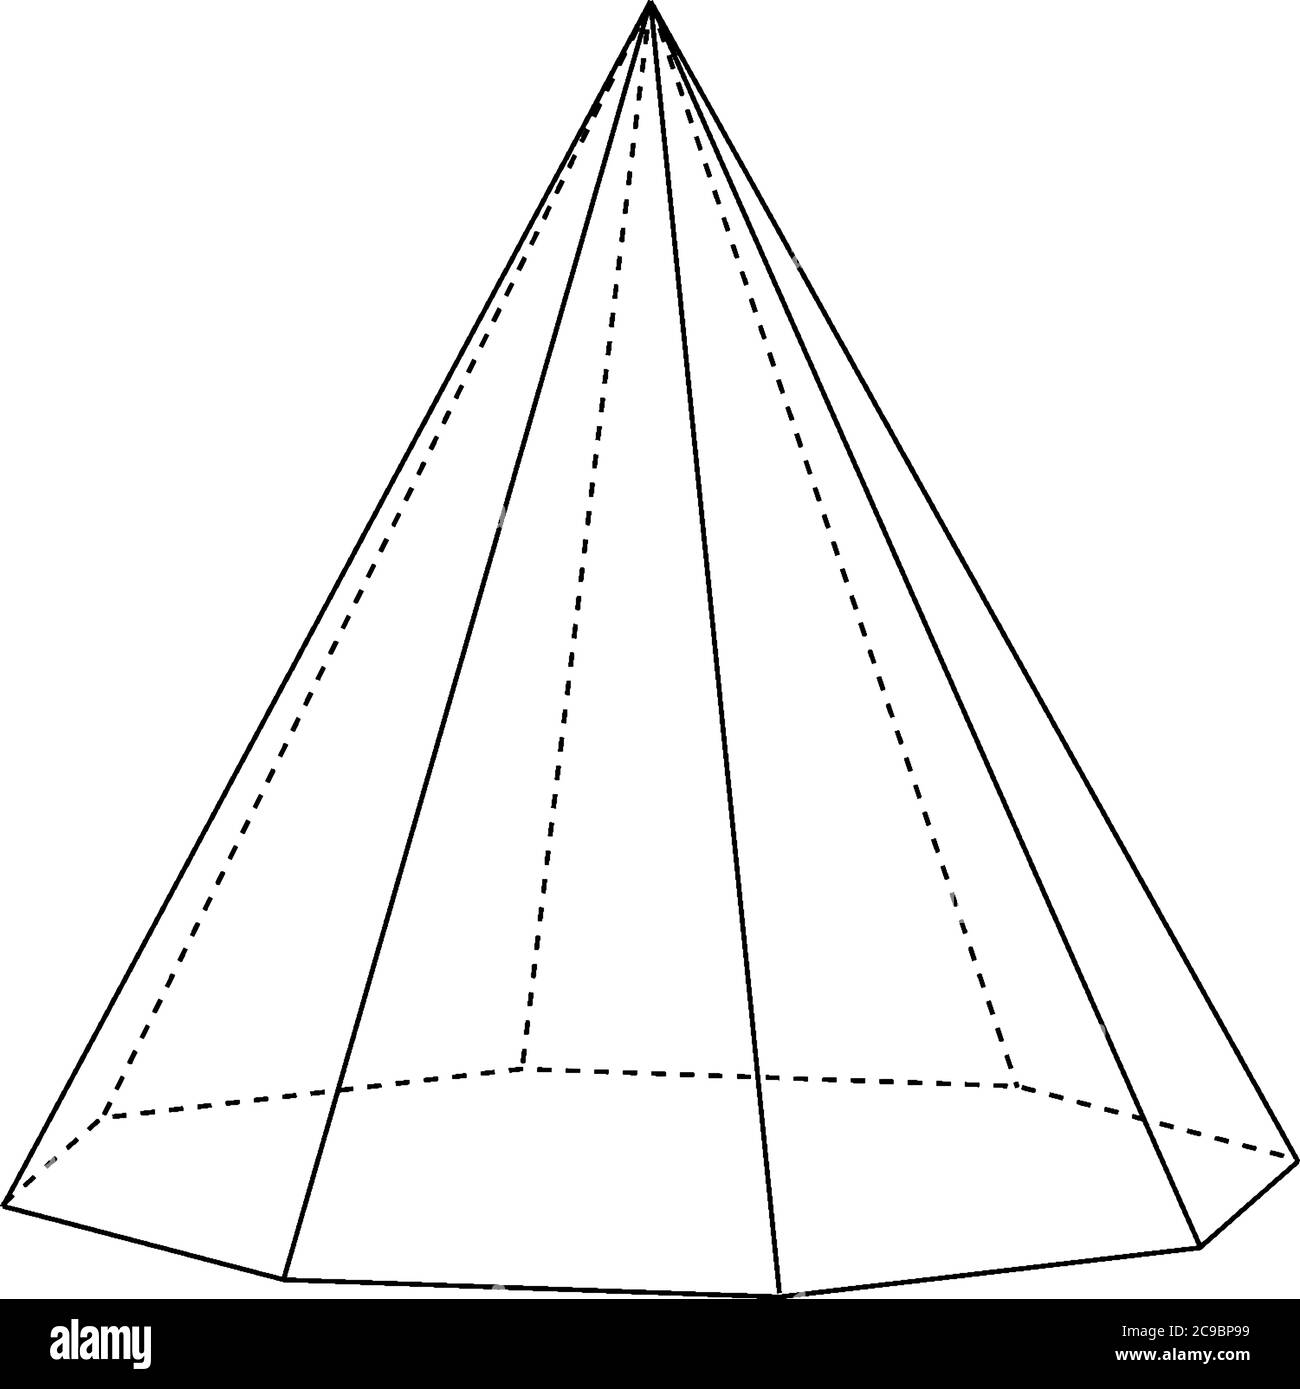 Costruzione geometrica di una piramide ottagonale destra con bordi  nascosti. La base è un ottagono e le facce sono triangoli isoscele, lin  vintage Immagine e Vettoriale - Alamy